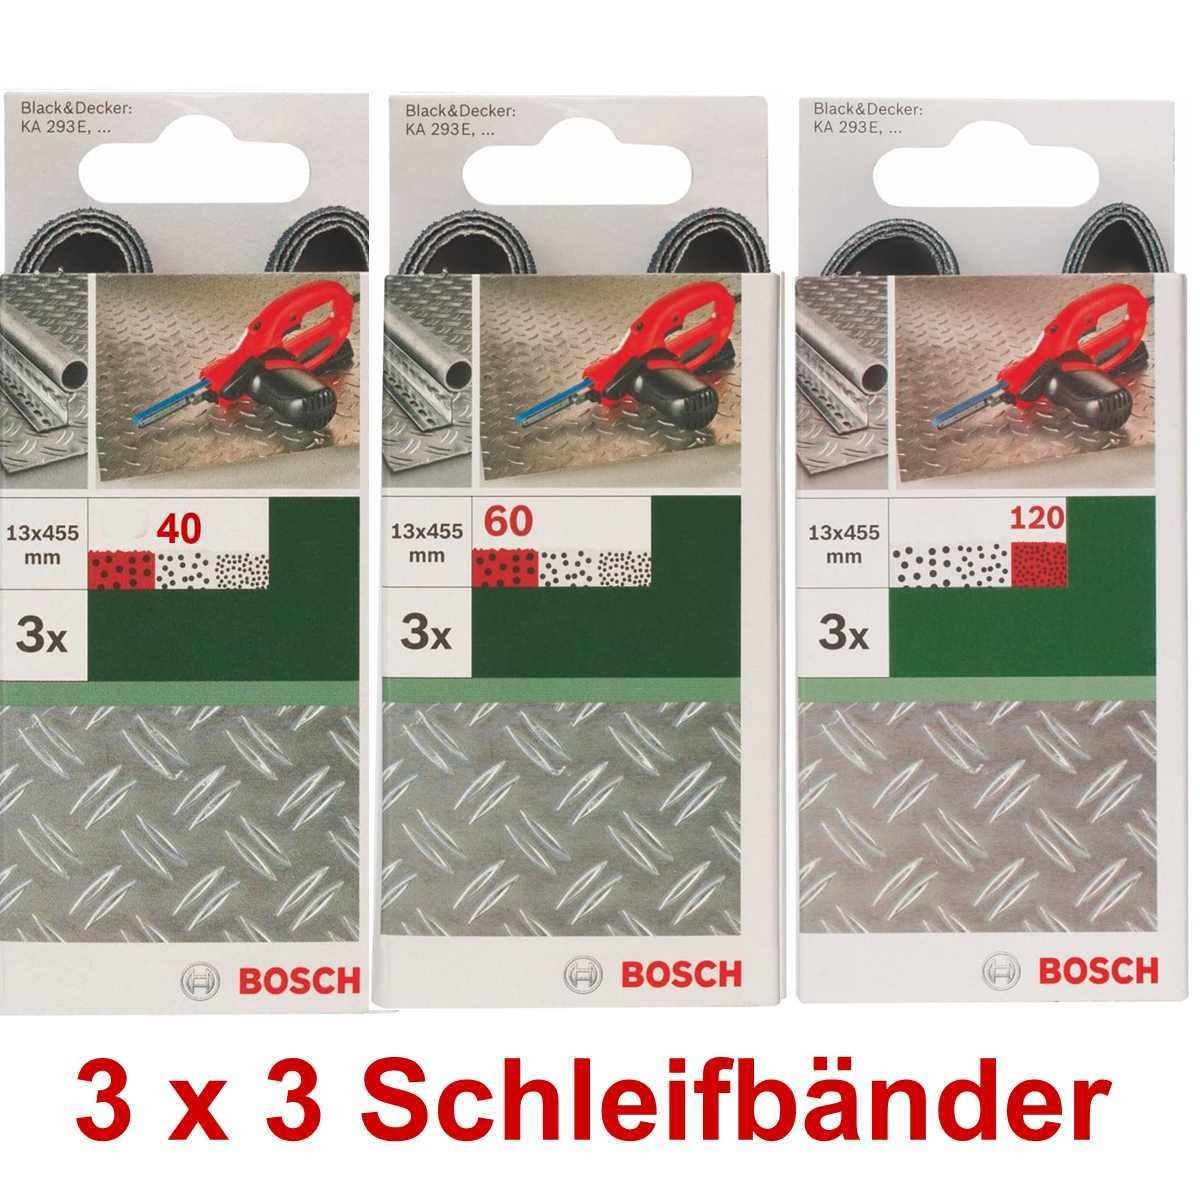 3 Powerfile x 13 B+D 40,60 mm, Bohrfutter für 293E KA x Schleifbänder 451 BOSCH Bosch 3